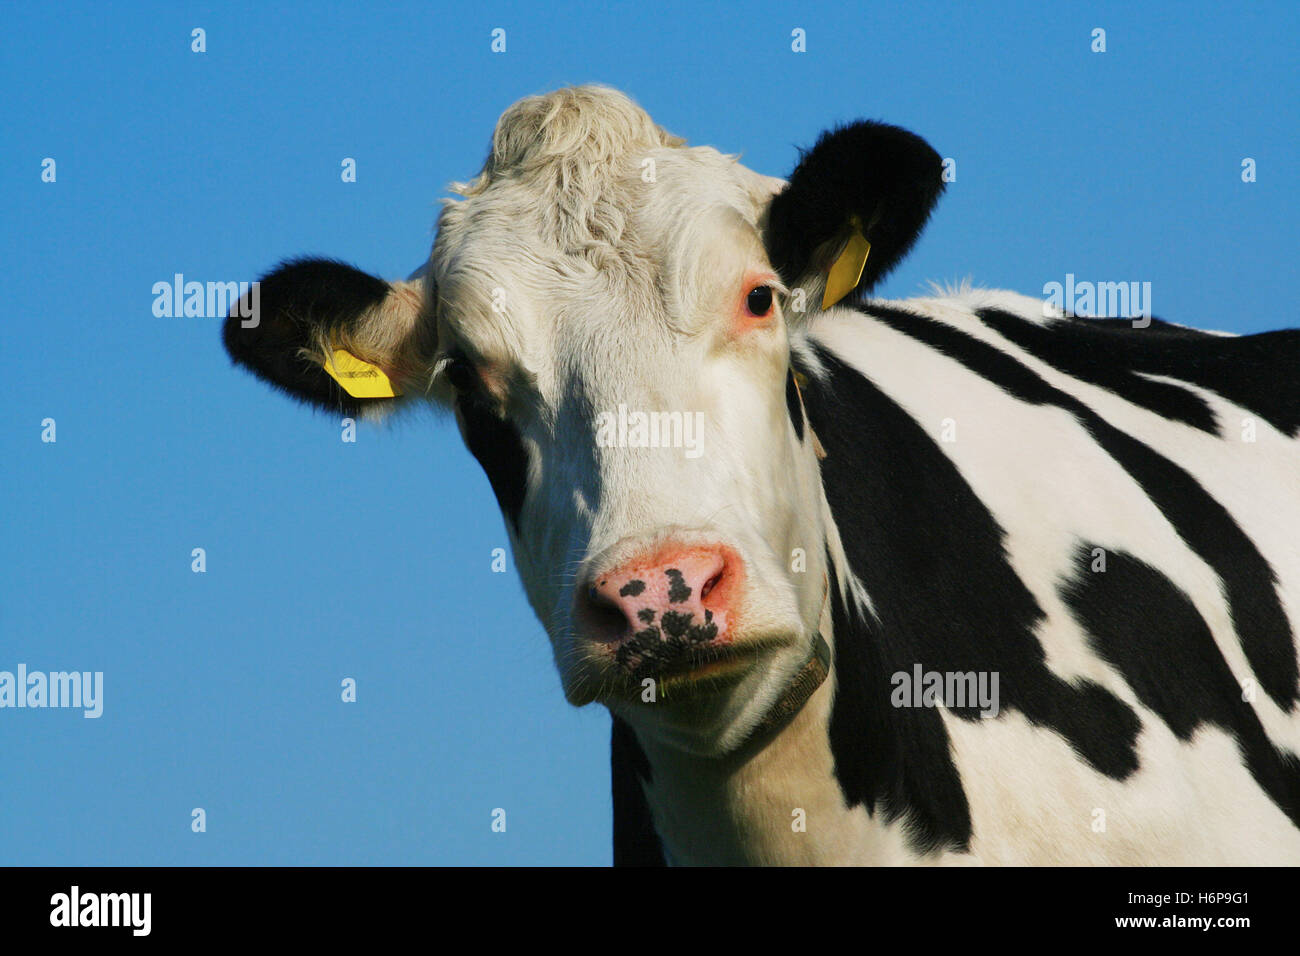 cow -1- Stock Photo